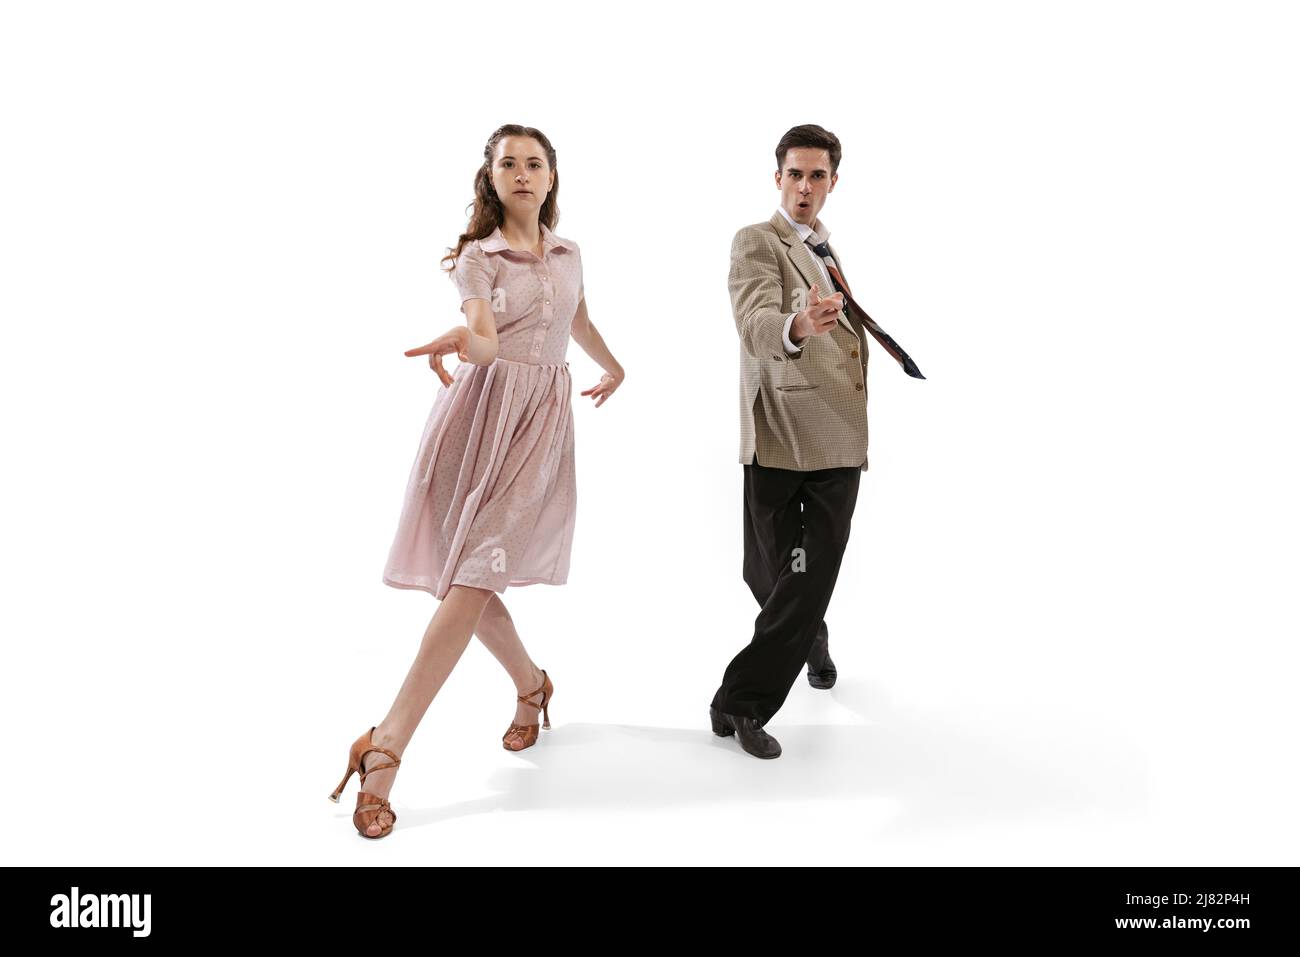 Jeune homme et femme en costume rétro vintage dansant danse sociale isolée sur fond blanc. Traditions intemporelles, 1960s mode américain Banque D'Images